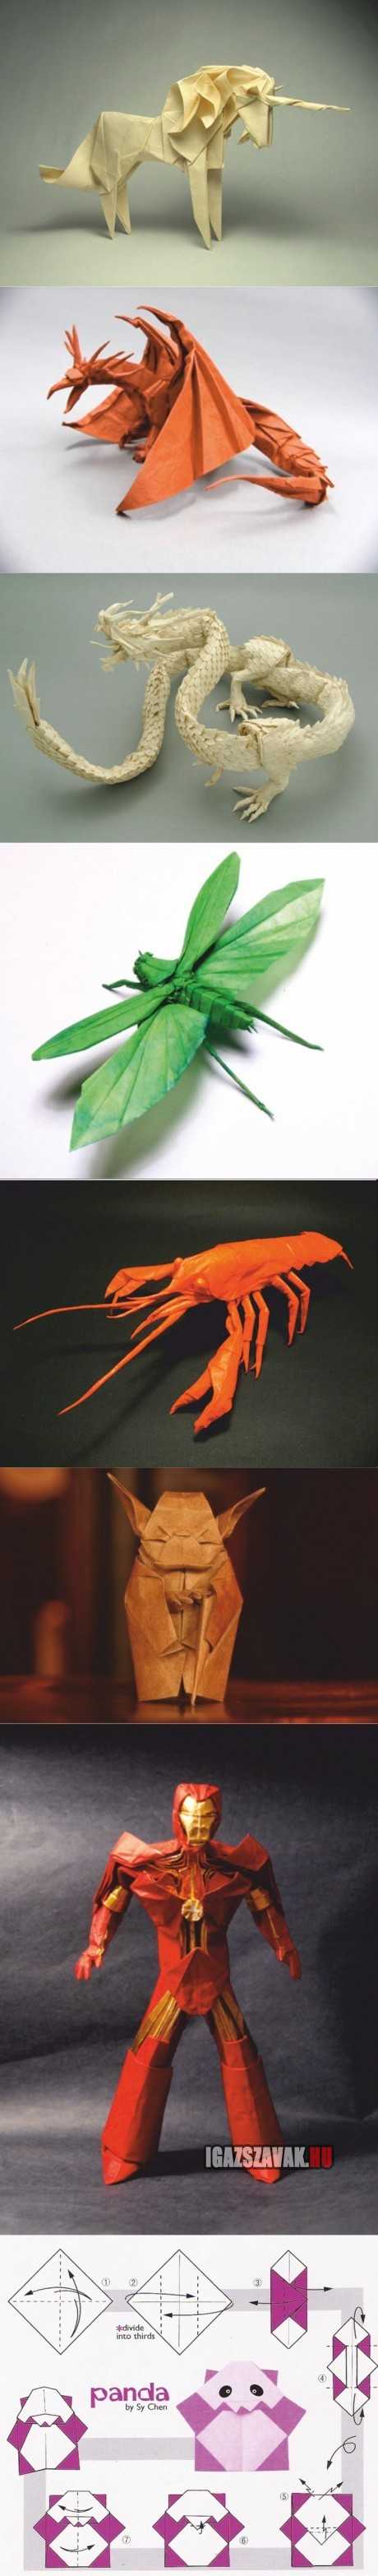 nem ma kezdték elképesztő origami alkotások.és a végén egy meglepi